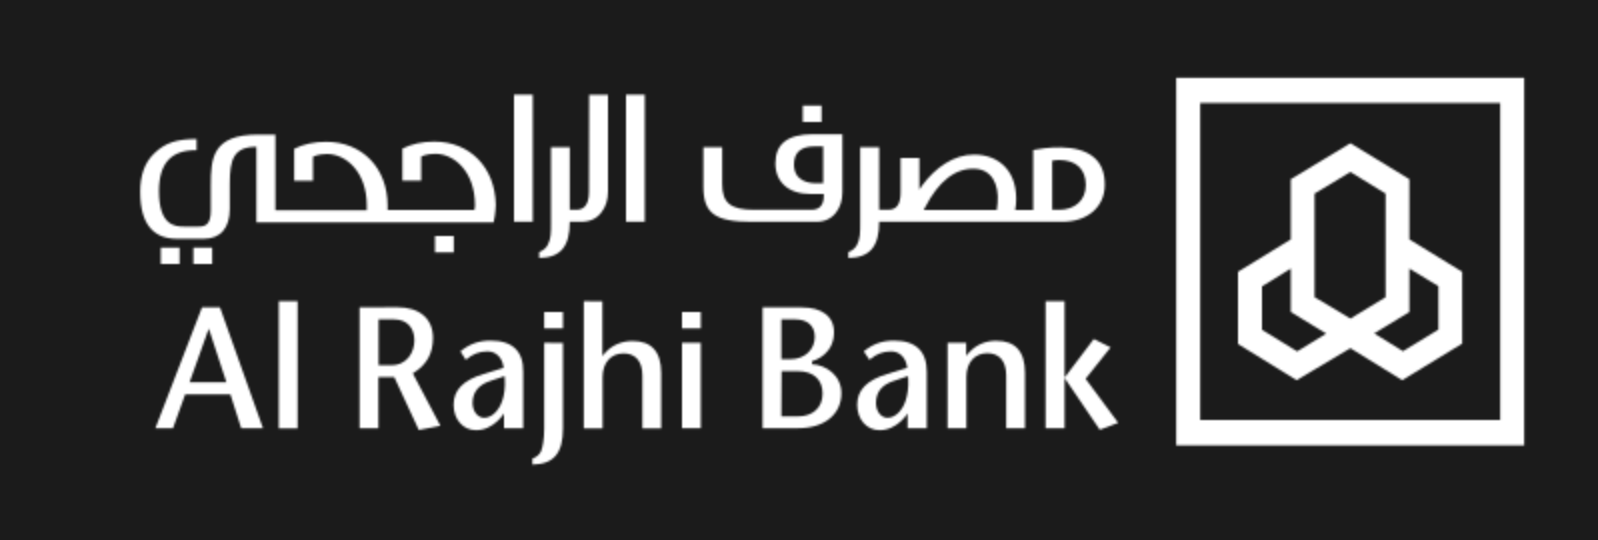 Al-Rajhi-Bank